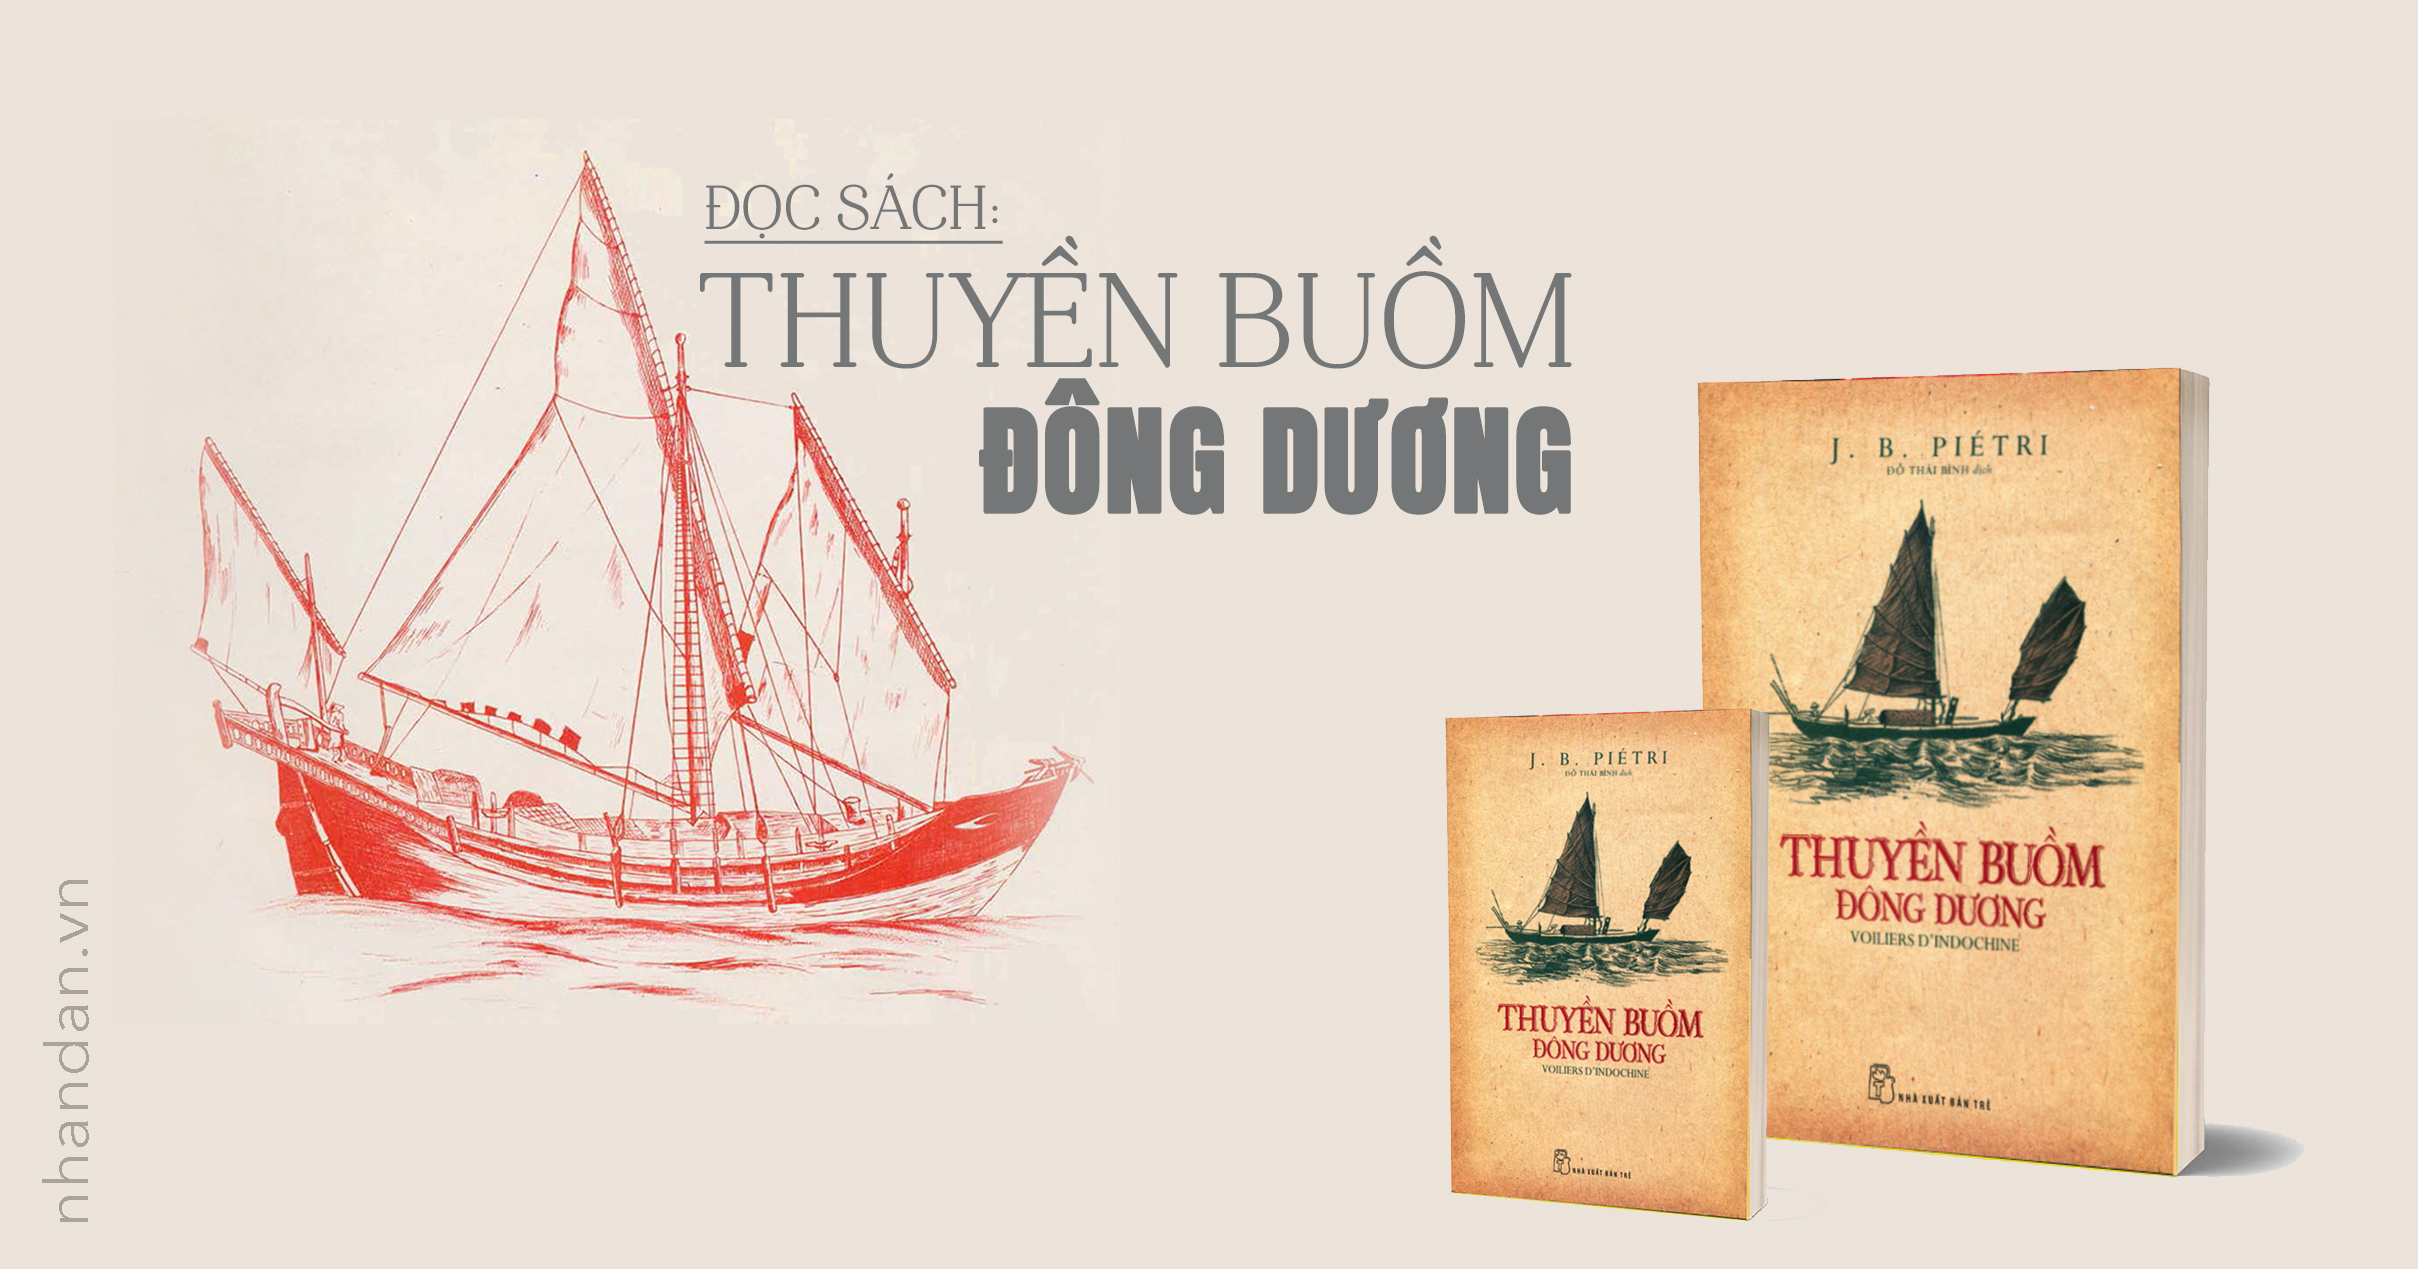 Đọc sách: "Thuyền buồm Đông Dương" - Hiểu người xưa qua đời sống thuyền buồm 